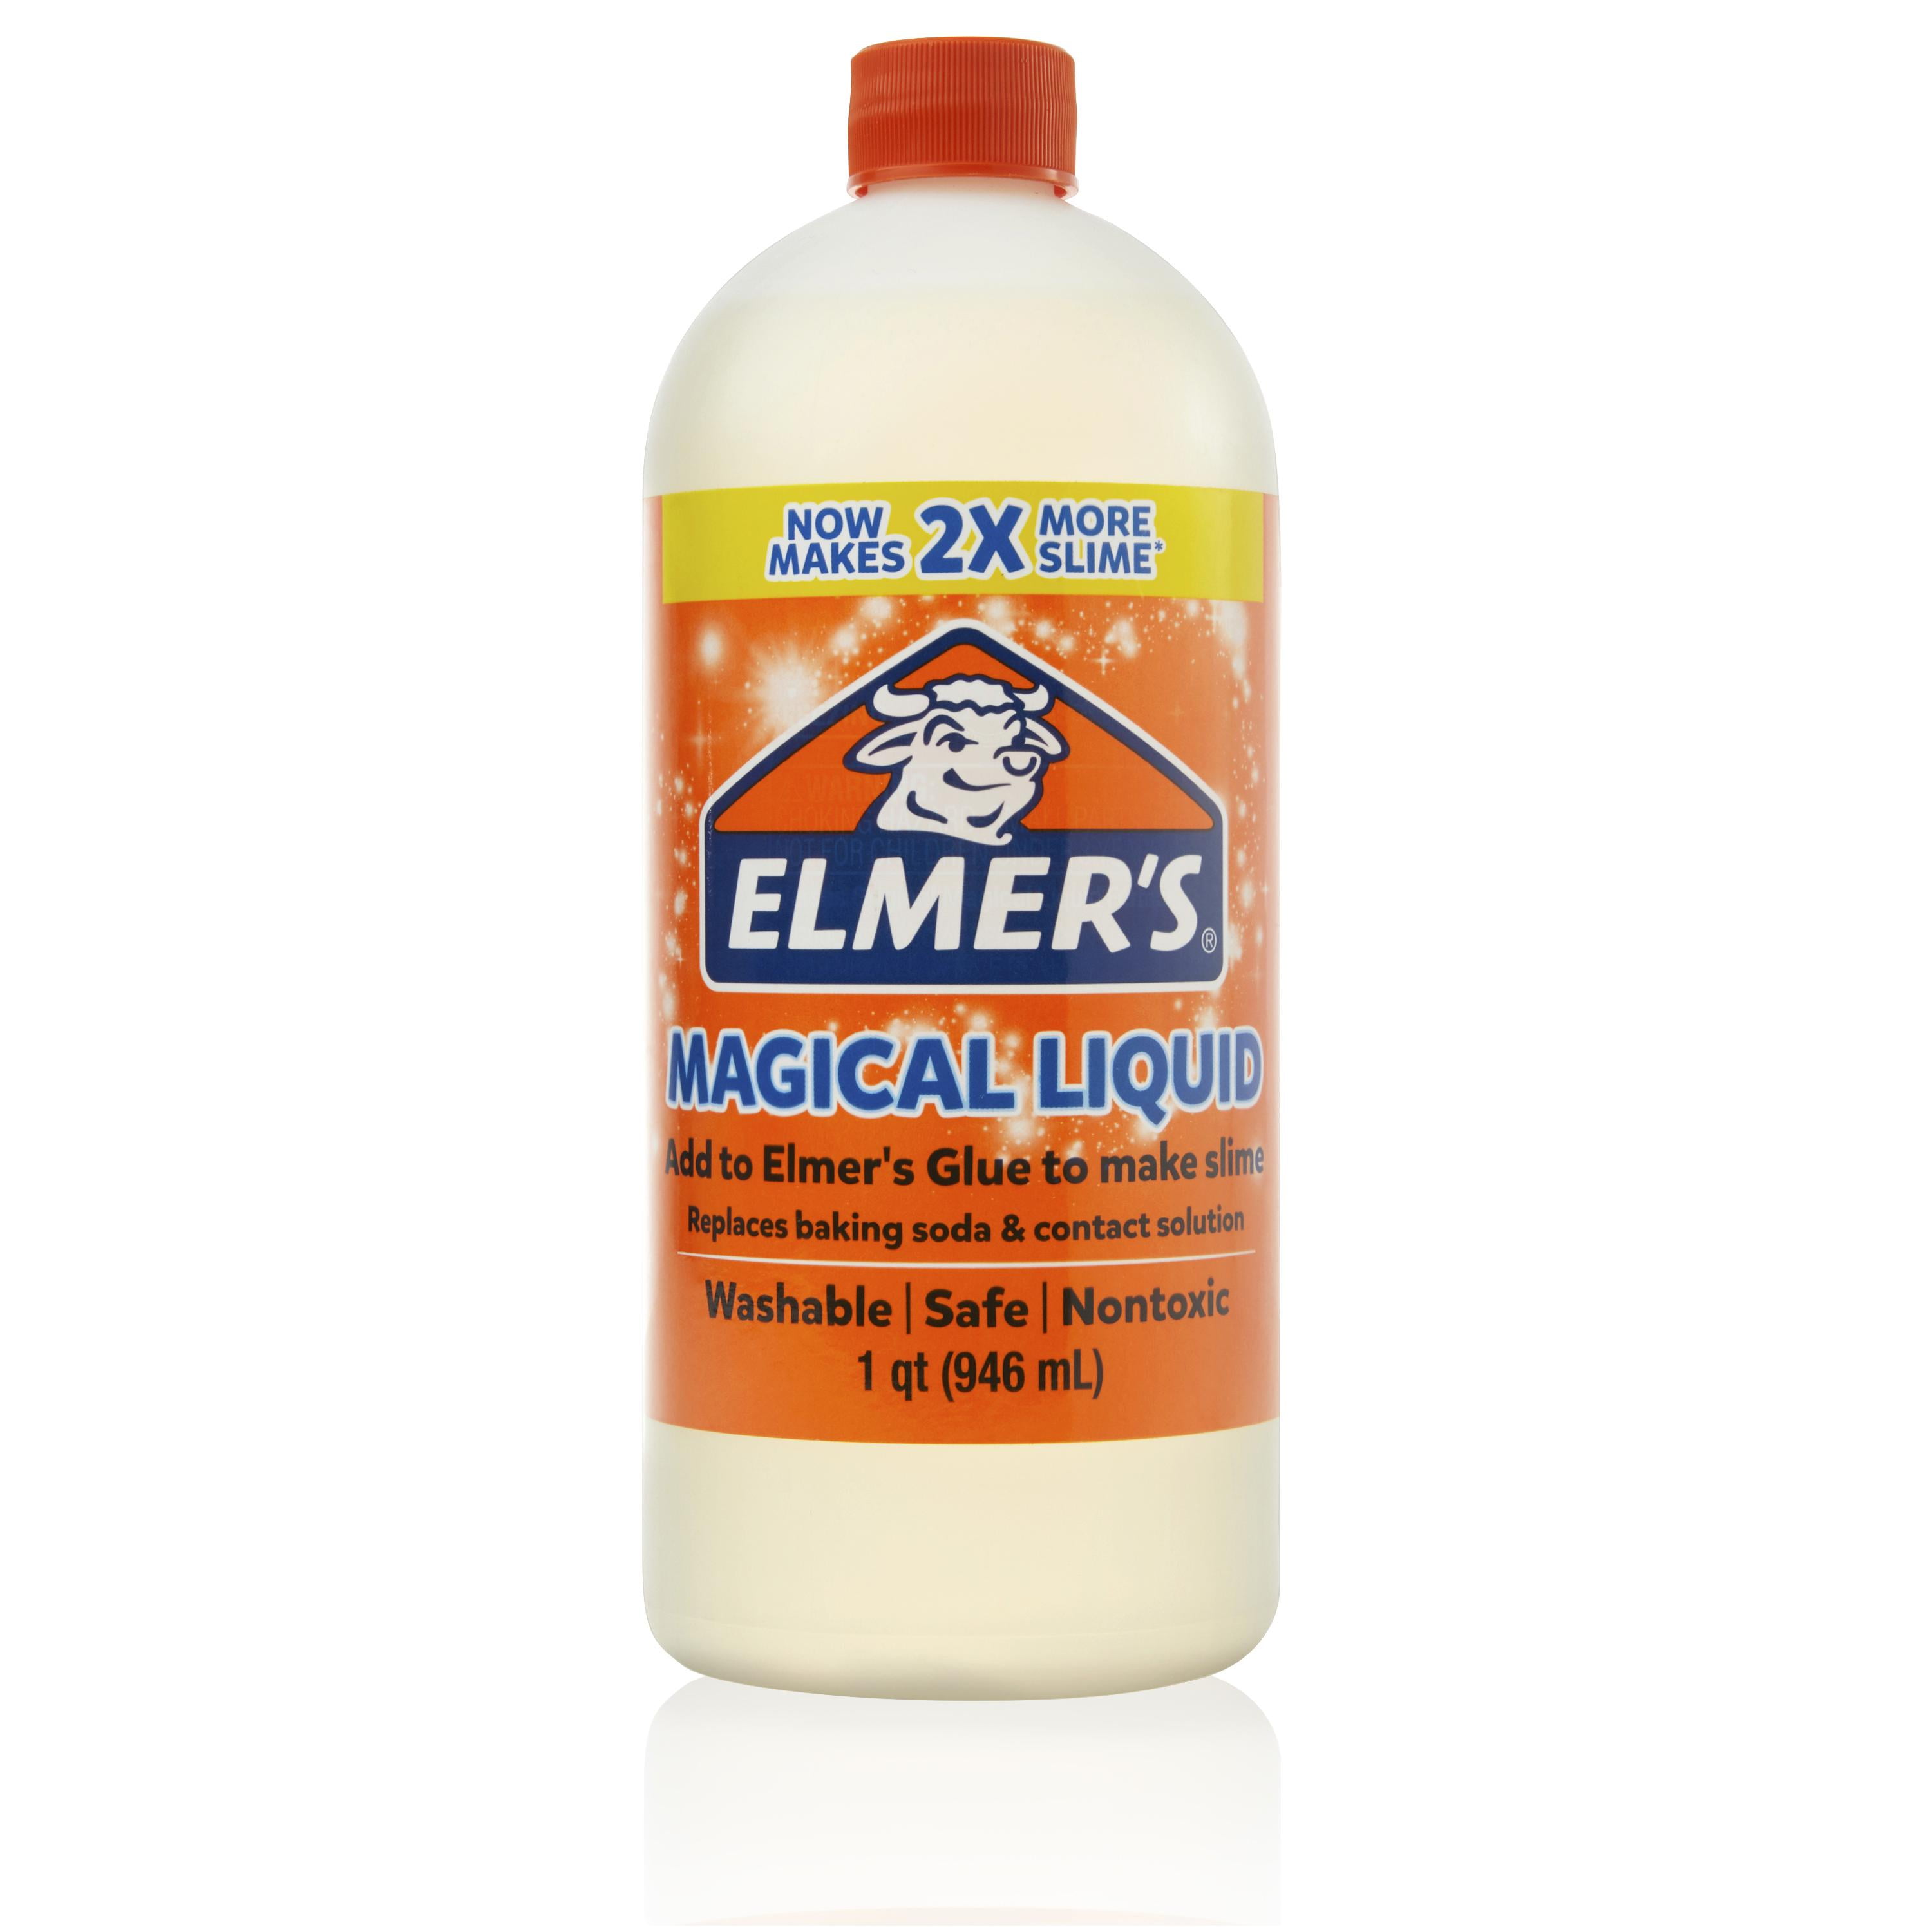 Elmers Elmer's E1322 Glue-All White Glue- Repositionable- 4 oz E1322